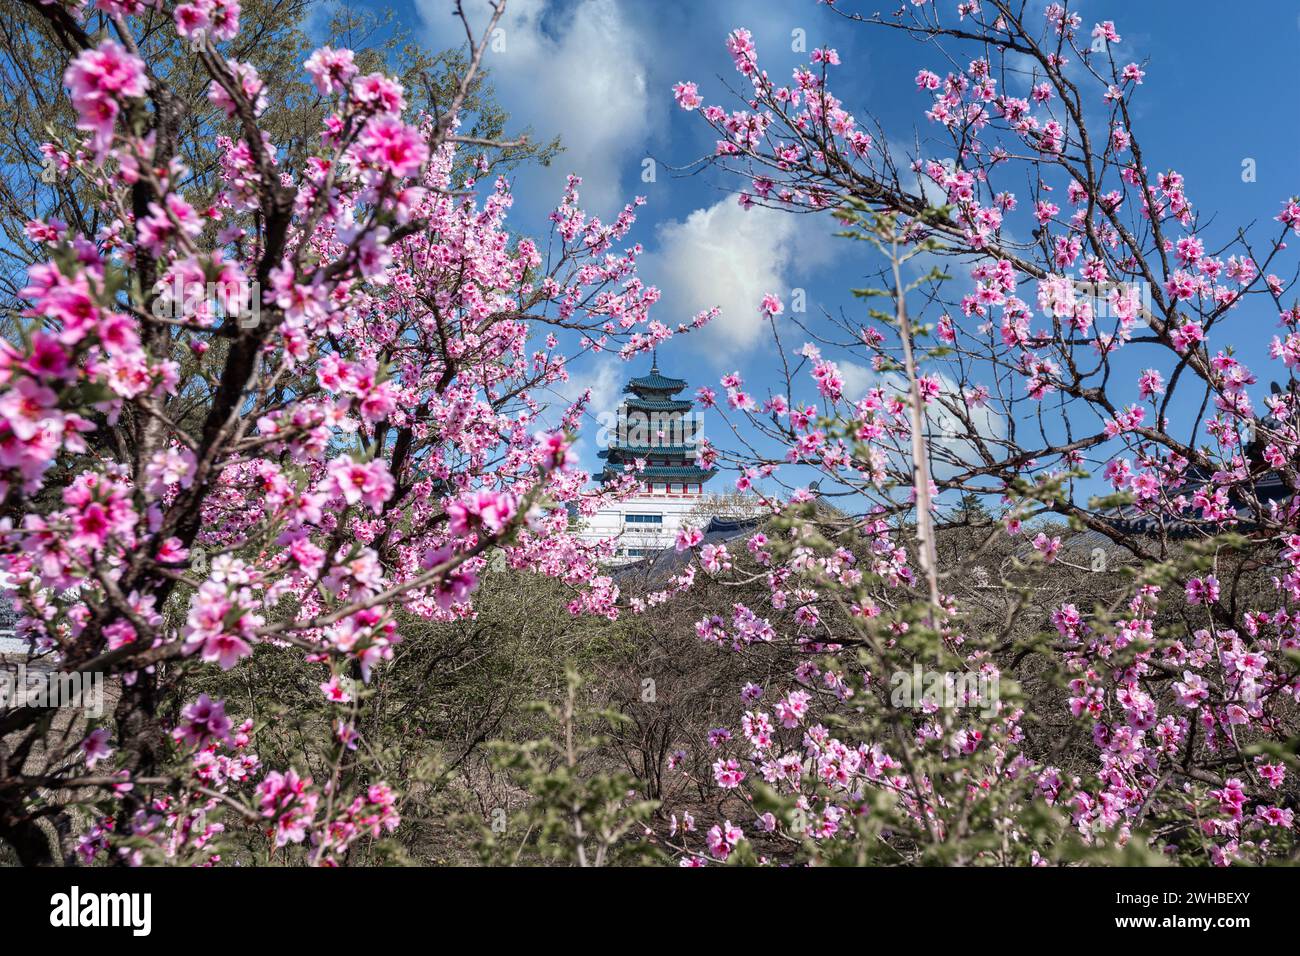 Gyeongbokgung palace avec cherry blossom tree au printemps dans la ville de Séoul de Corée, la Corée du Sud. Banque D'Images